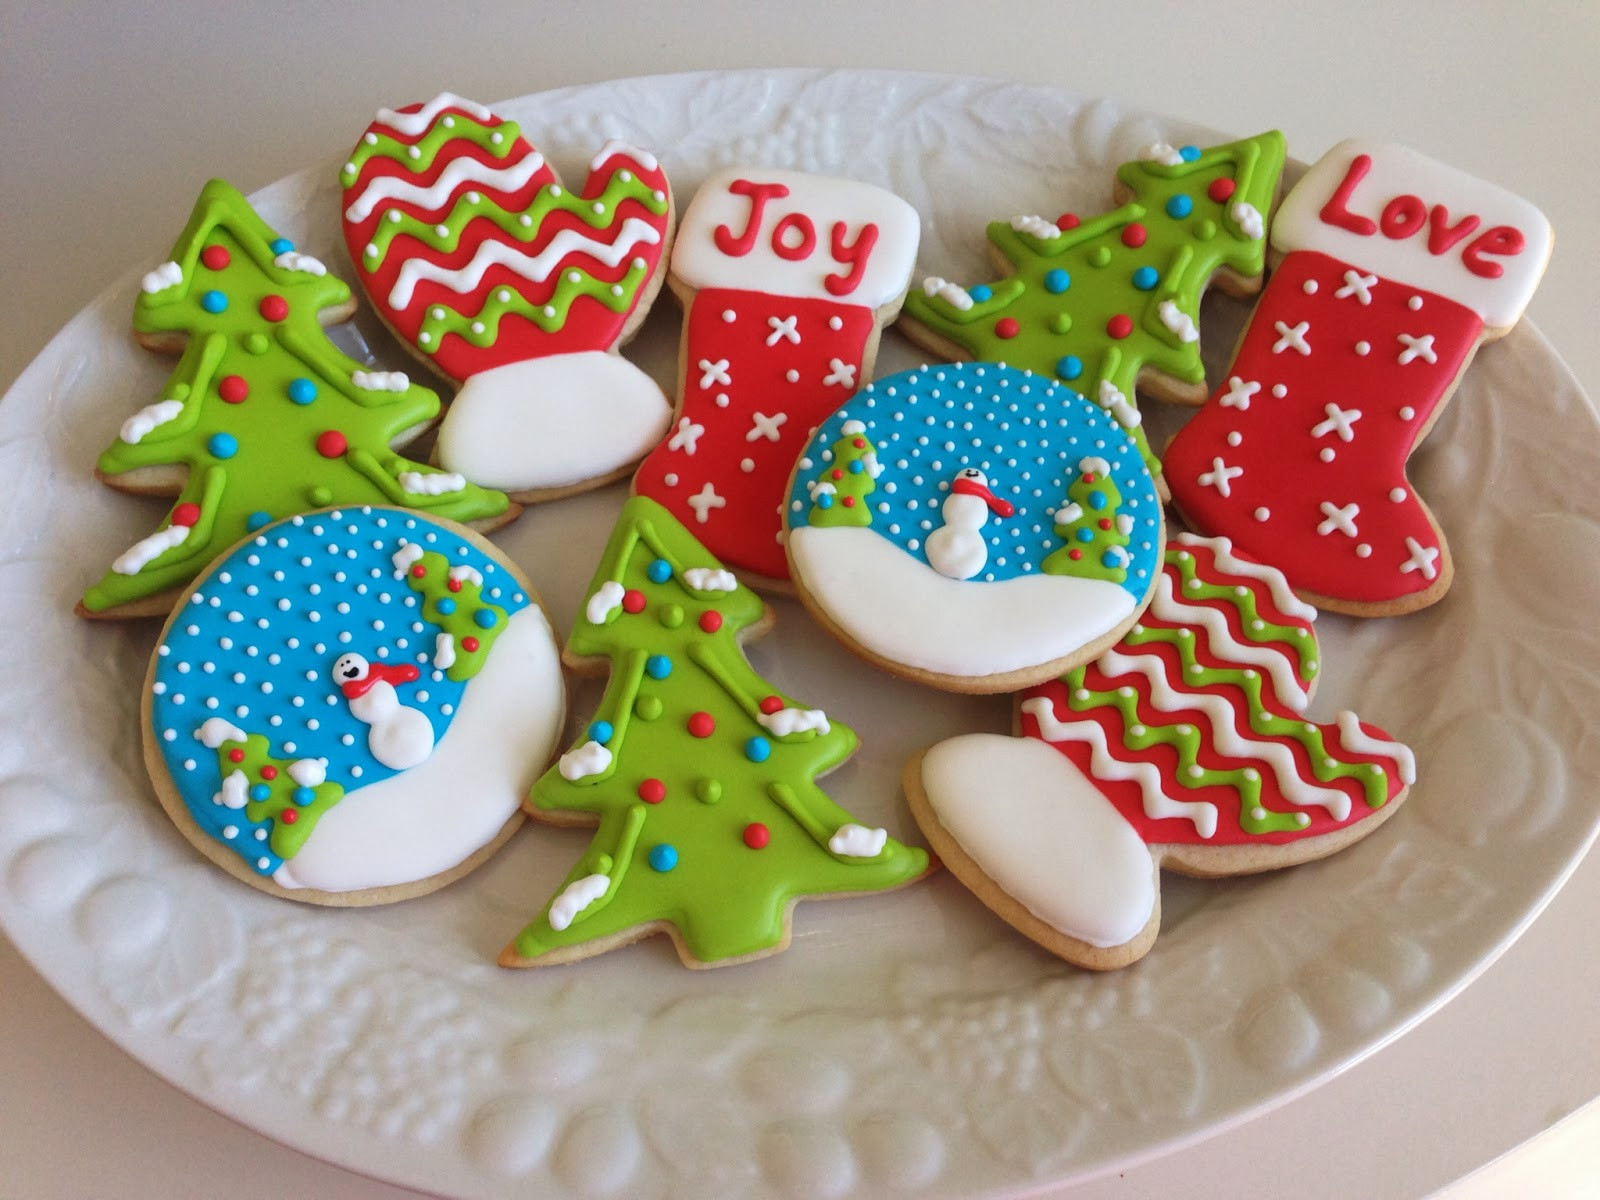 Christmas Cookies With Royal Icing
 monograms & cake Christmas Cut Out Sugar Cookies with